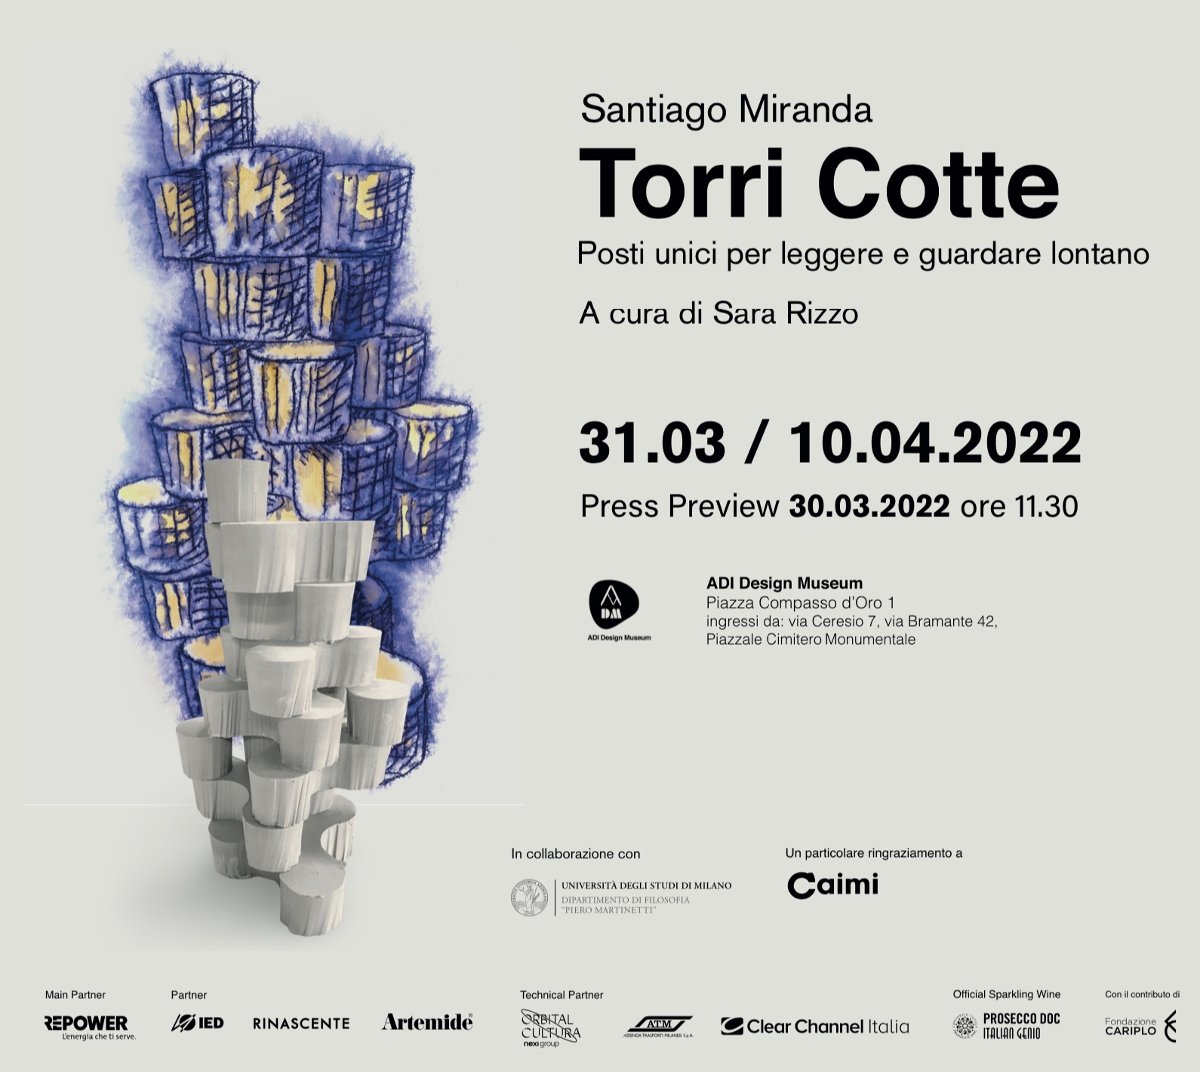 Santiago Miranda – Torri Cotte